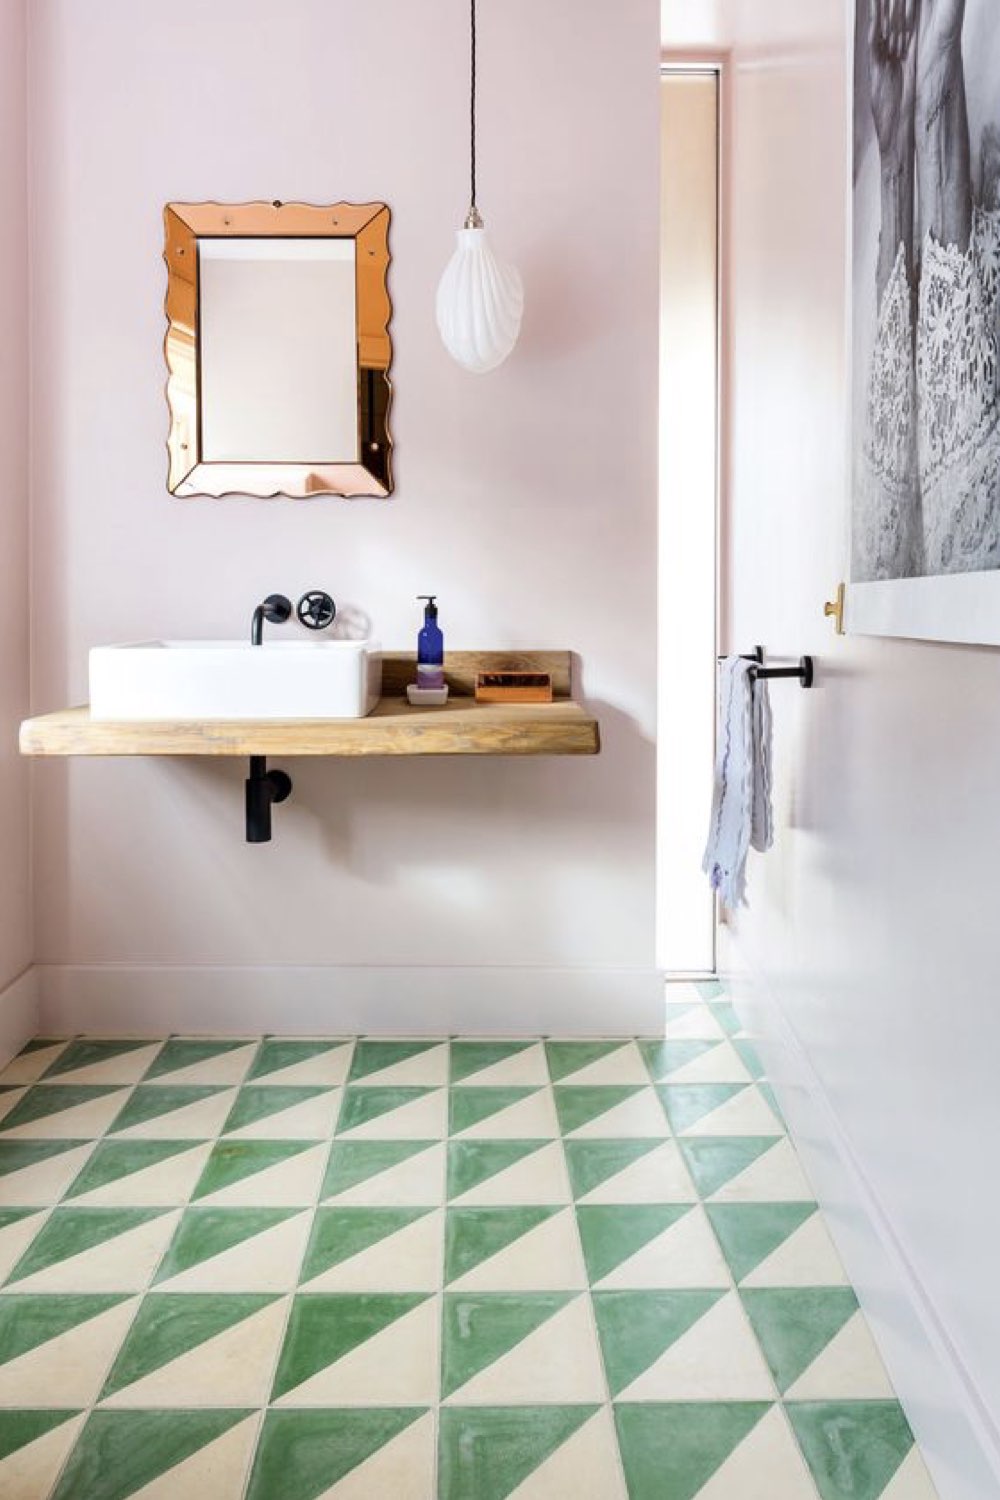 salle de bain decoration reussie exemple couleur complémentaire mur rose sol géométrique vert féminin et original